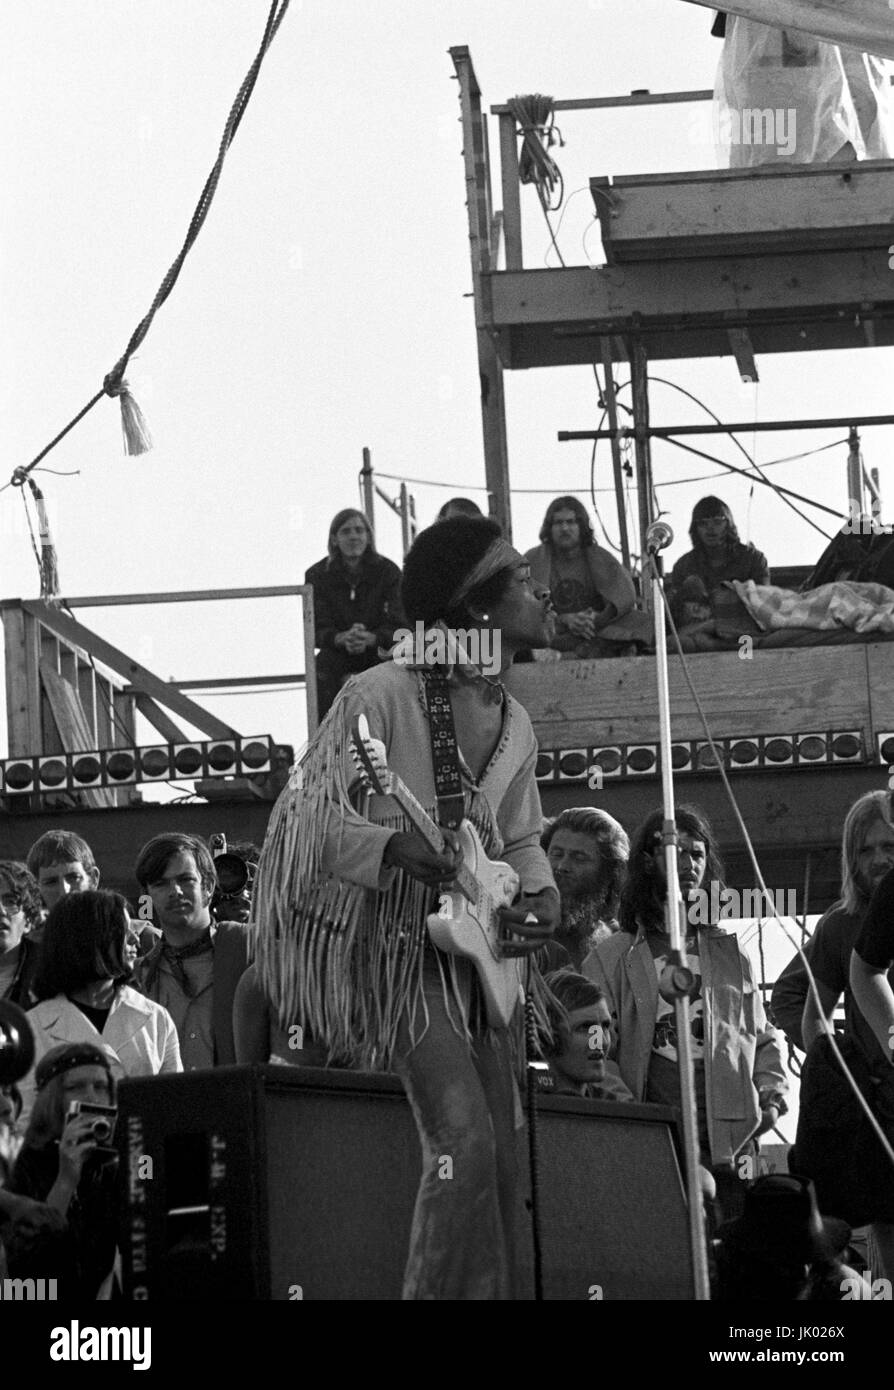 Jimi Hendrix l'exécution de son légendaire 2 heure performance à Woodstock Music & Arts Festival tenue le Sam Yasgur's champ de luzerne dans le comté de Sullivan à Bethal, New York le 18 août 1969. Hendrix a insisté pour qu'il près le festival et devait comparaître à minuit, mais en raison de retards n'a pas pris la scène jusqu'à 9 h lundi matin. La plupart de la foule avait quitté pour la maison d'ici là et avait diminué de pas moins de 500 000 $ à 80 000 misérables. ** Les taux plus élevés s'appliquent ** APPEL À NÉGOCIER ** JAMAIS publié des photos ** © Peter Tarnoff / MediaPunch Banque D'Images